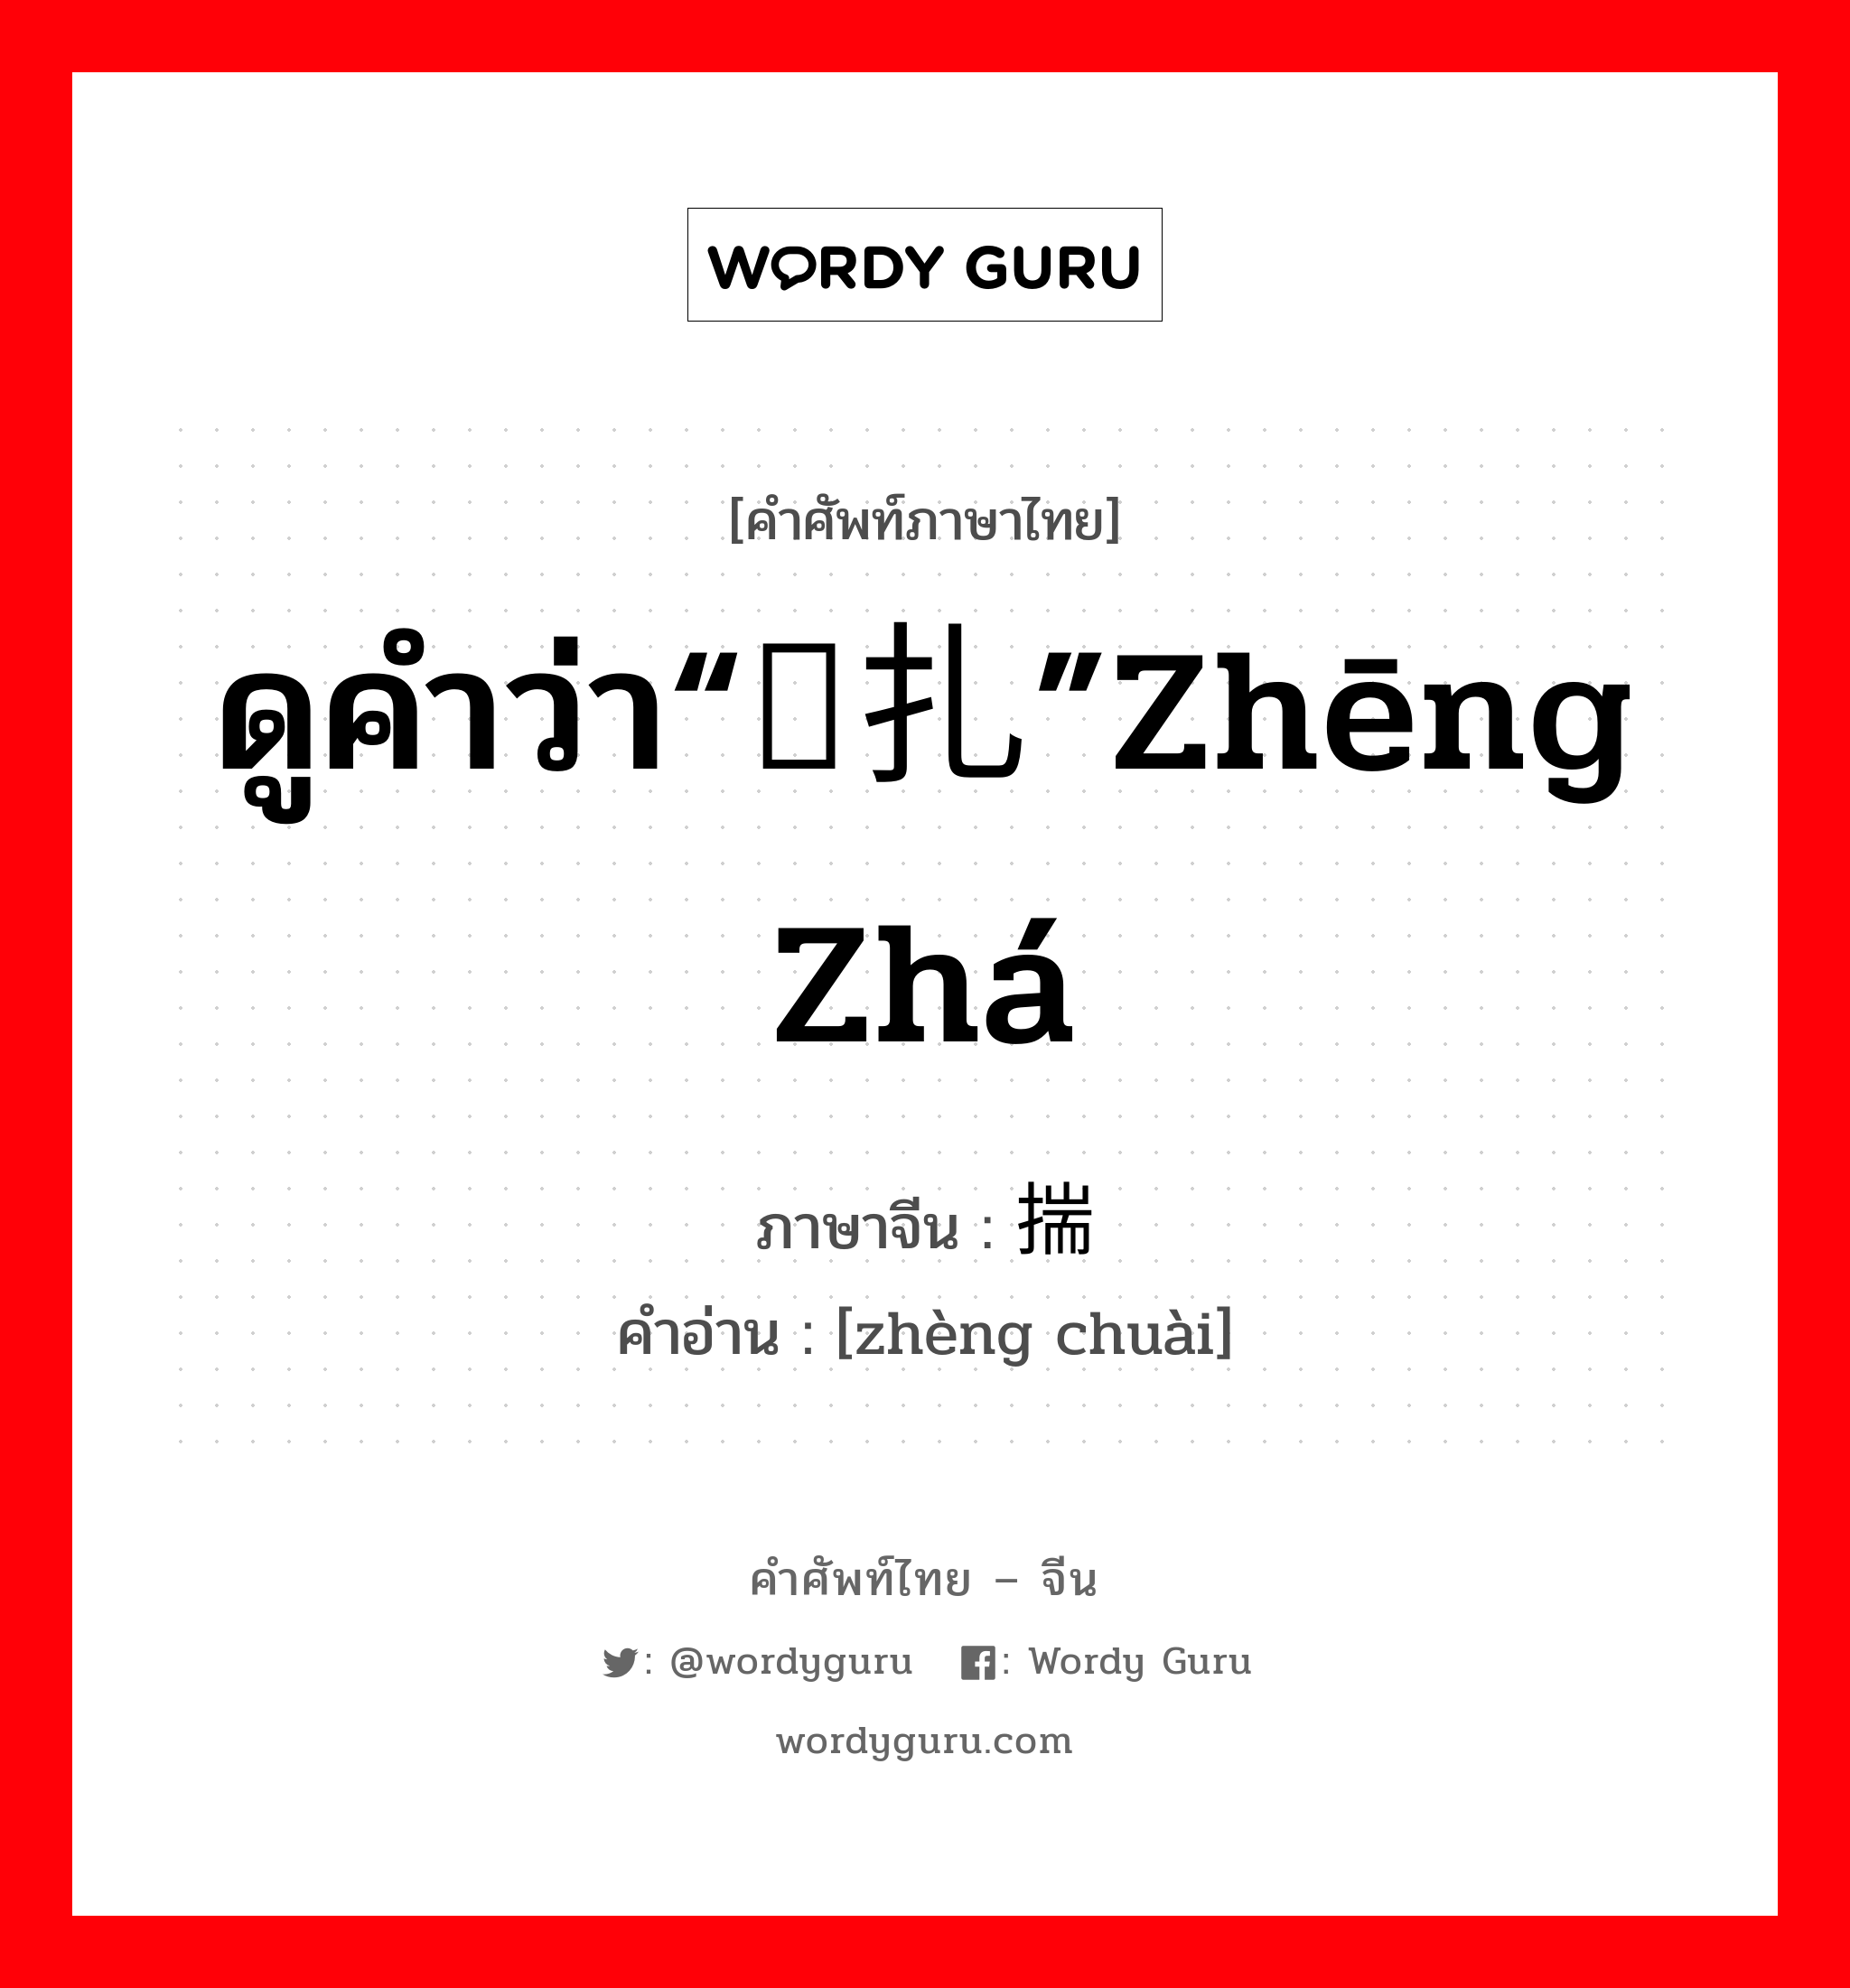 ดูคำว่า“挣扎”zhēng zhá ภาษาจีนคืออะไร, คำศัพท์ภาษาไทย - จีน ดูคำว่า“挣扎”zhēng zhá ภาษาจีน 挣揣 คำอ่าน [zhèng chuài]